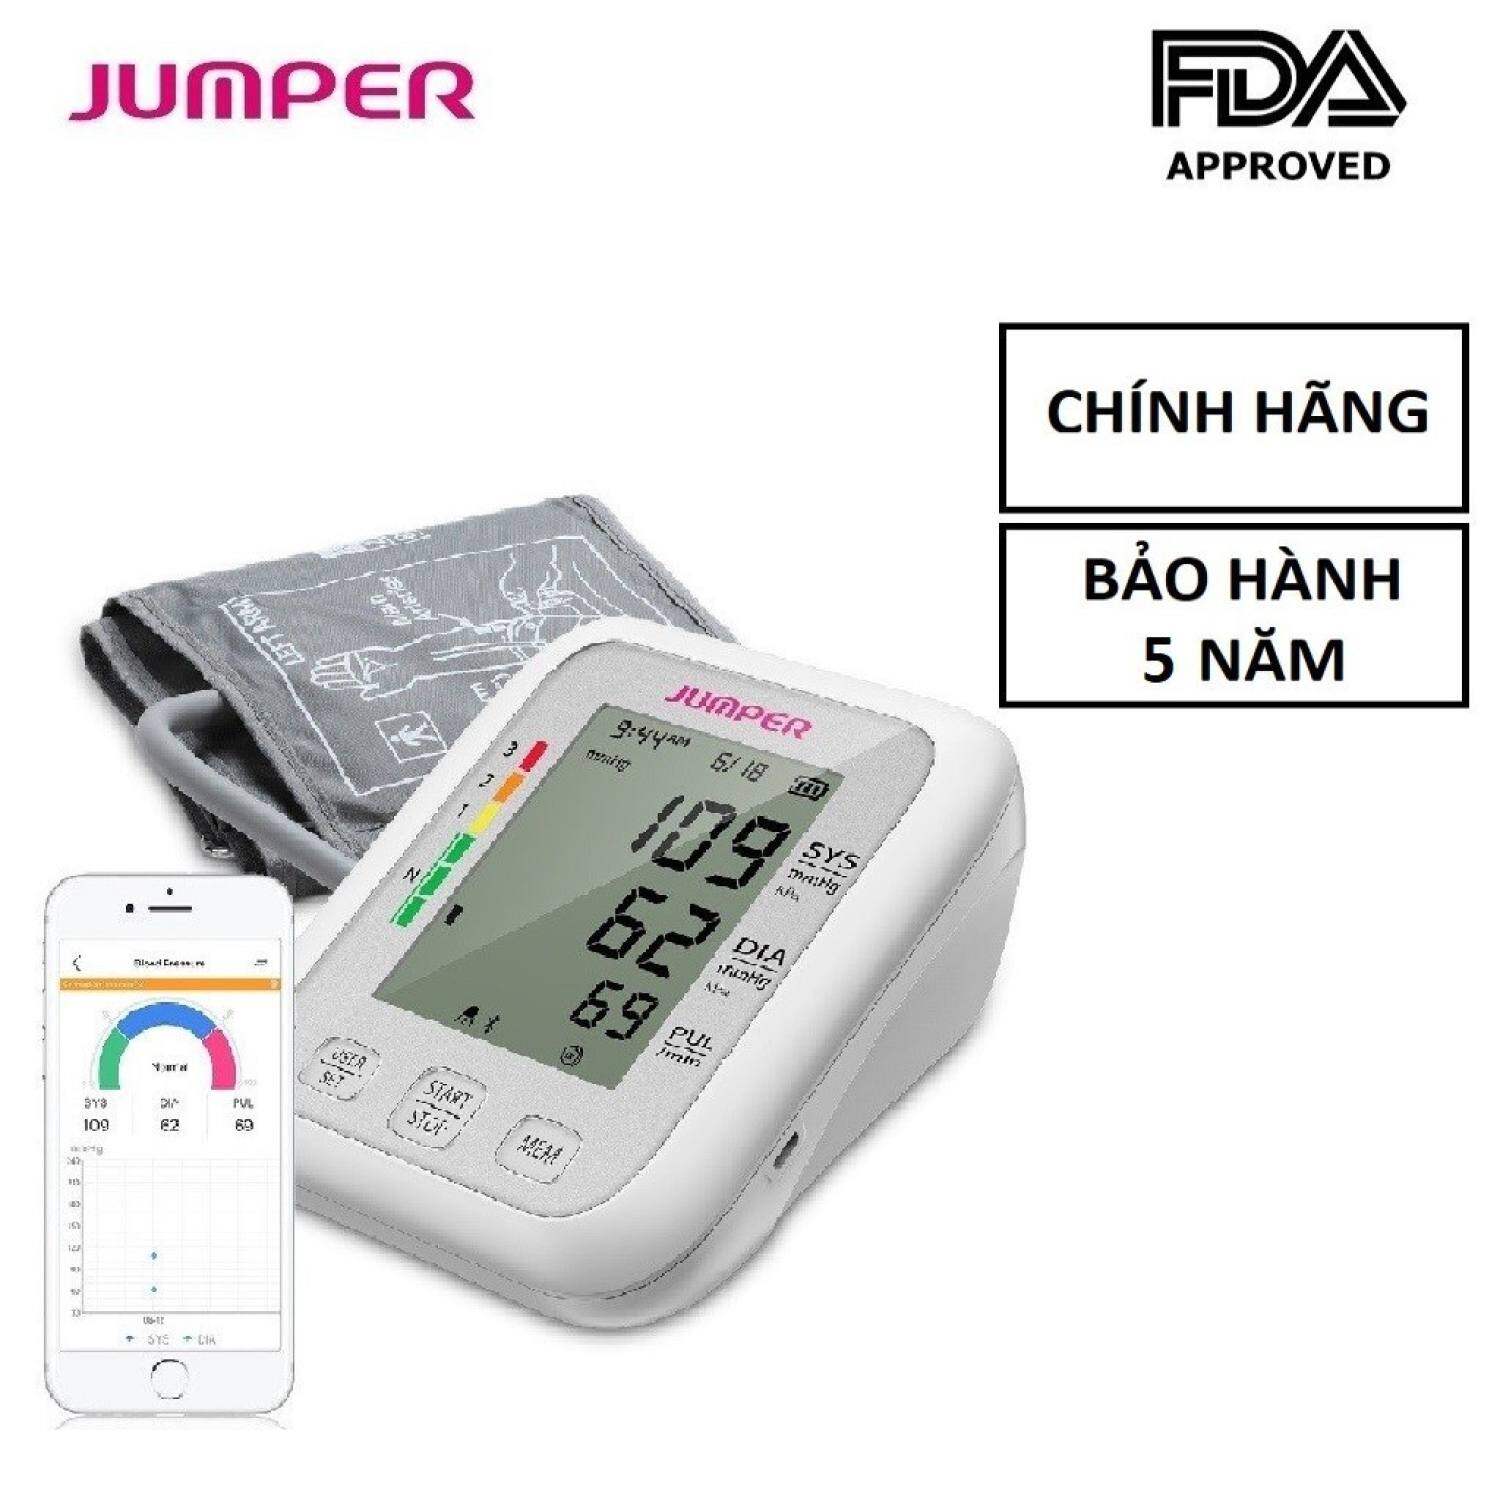 Máy đo huyết áp omron điện tử bắp tay Jumper JPD-HA120